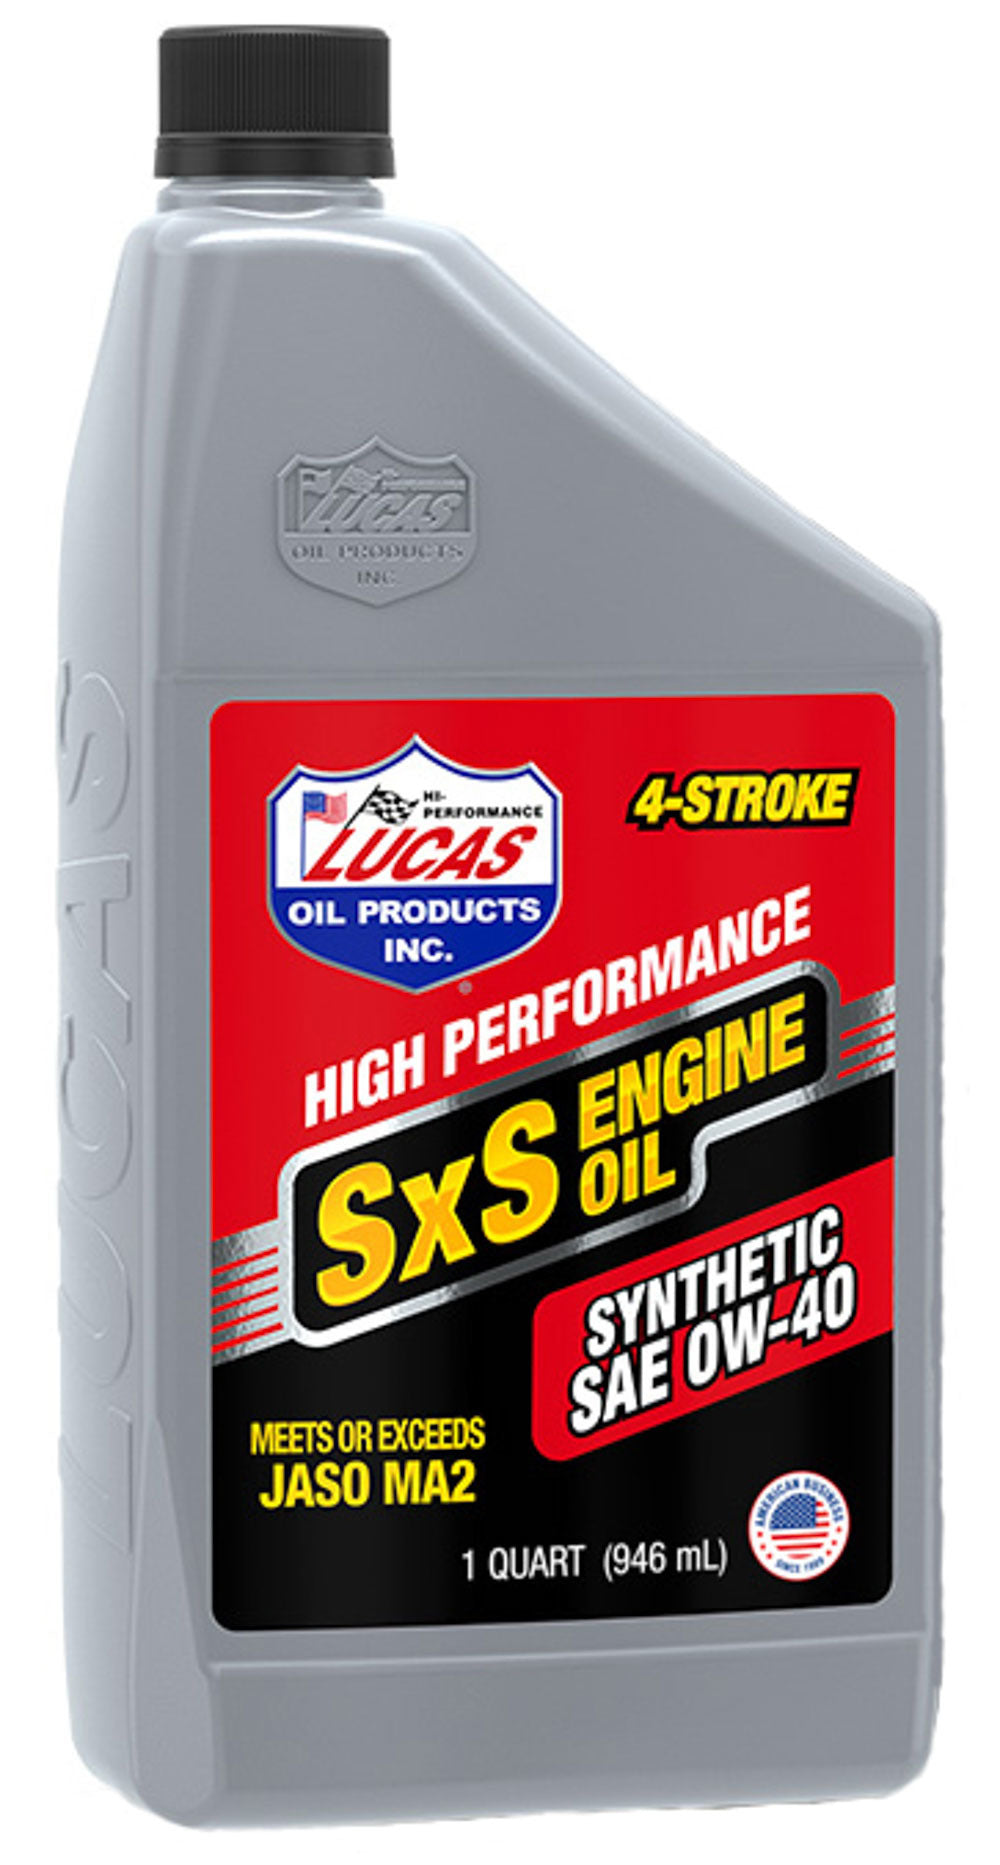 Lucas Oil Synthetic 0w40 SXS Oil 1 Quart LUC11200